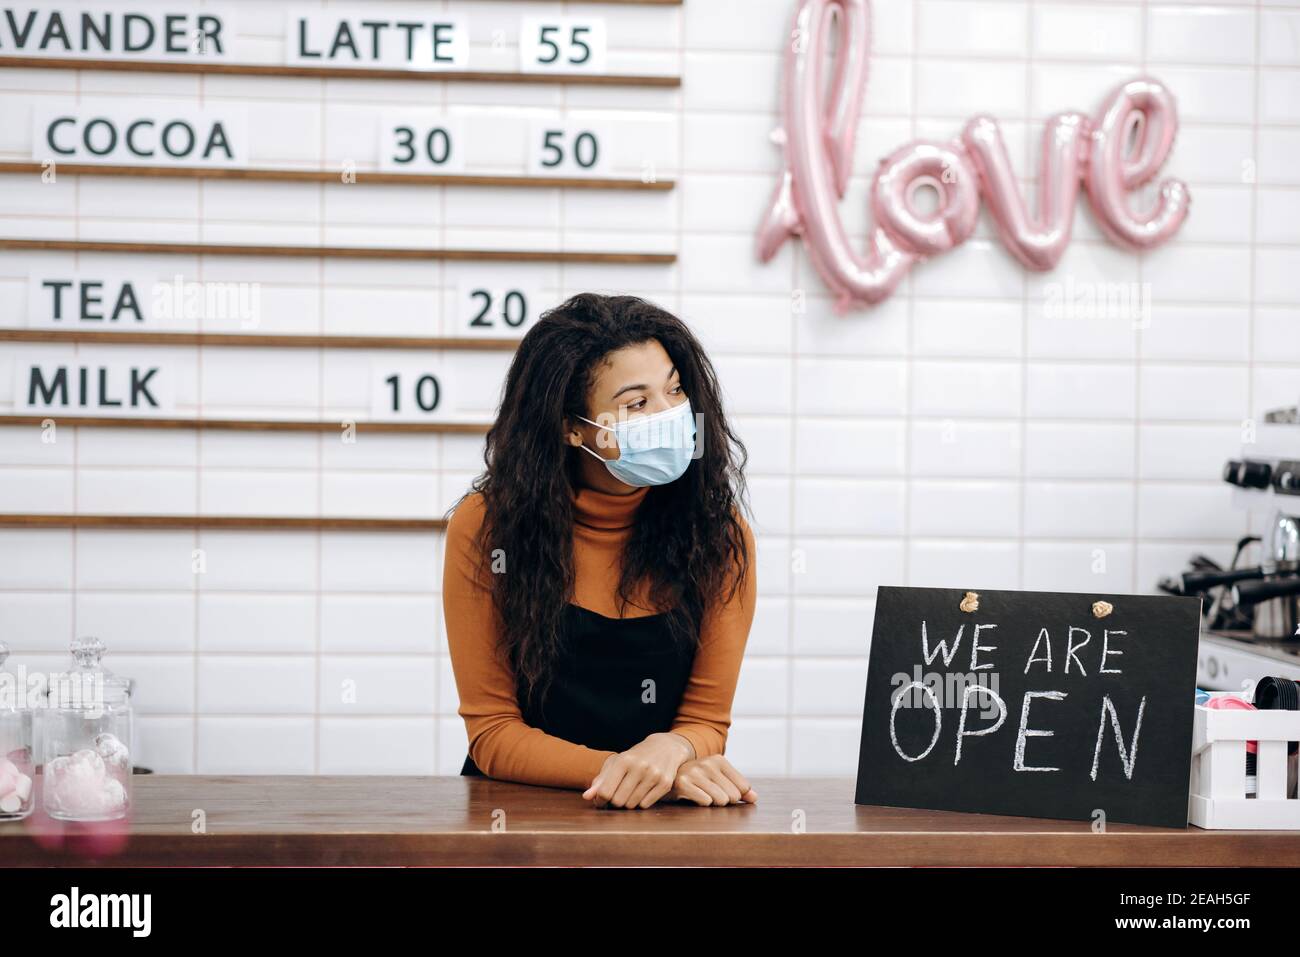 Eine freundliche afroamerikanische Barista, Kellnerin oder Cafébesitzerin, die eine medizinische Maske trägt, steht hinter der Theke neben einem Schild, DAS WIR ÖFFNEN, und wartet auf Besucher Stockfoto